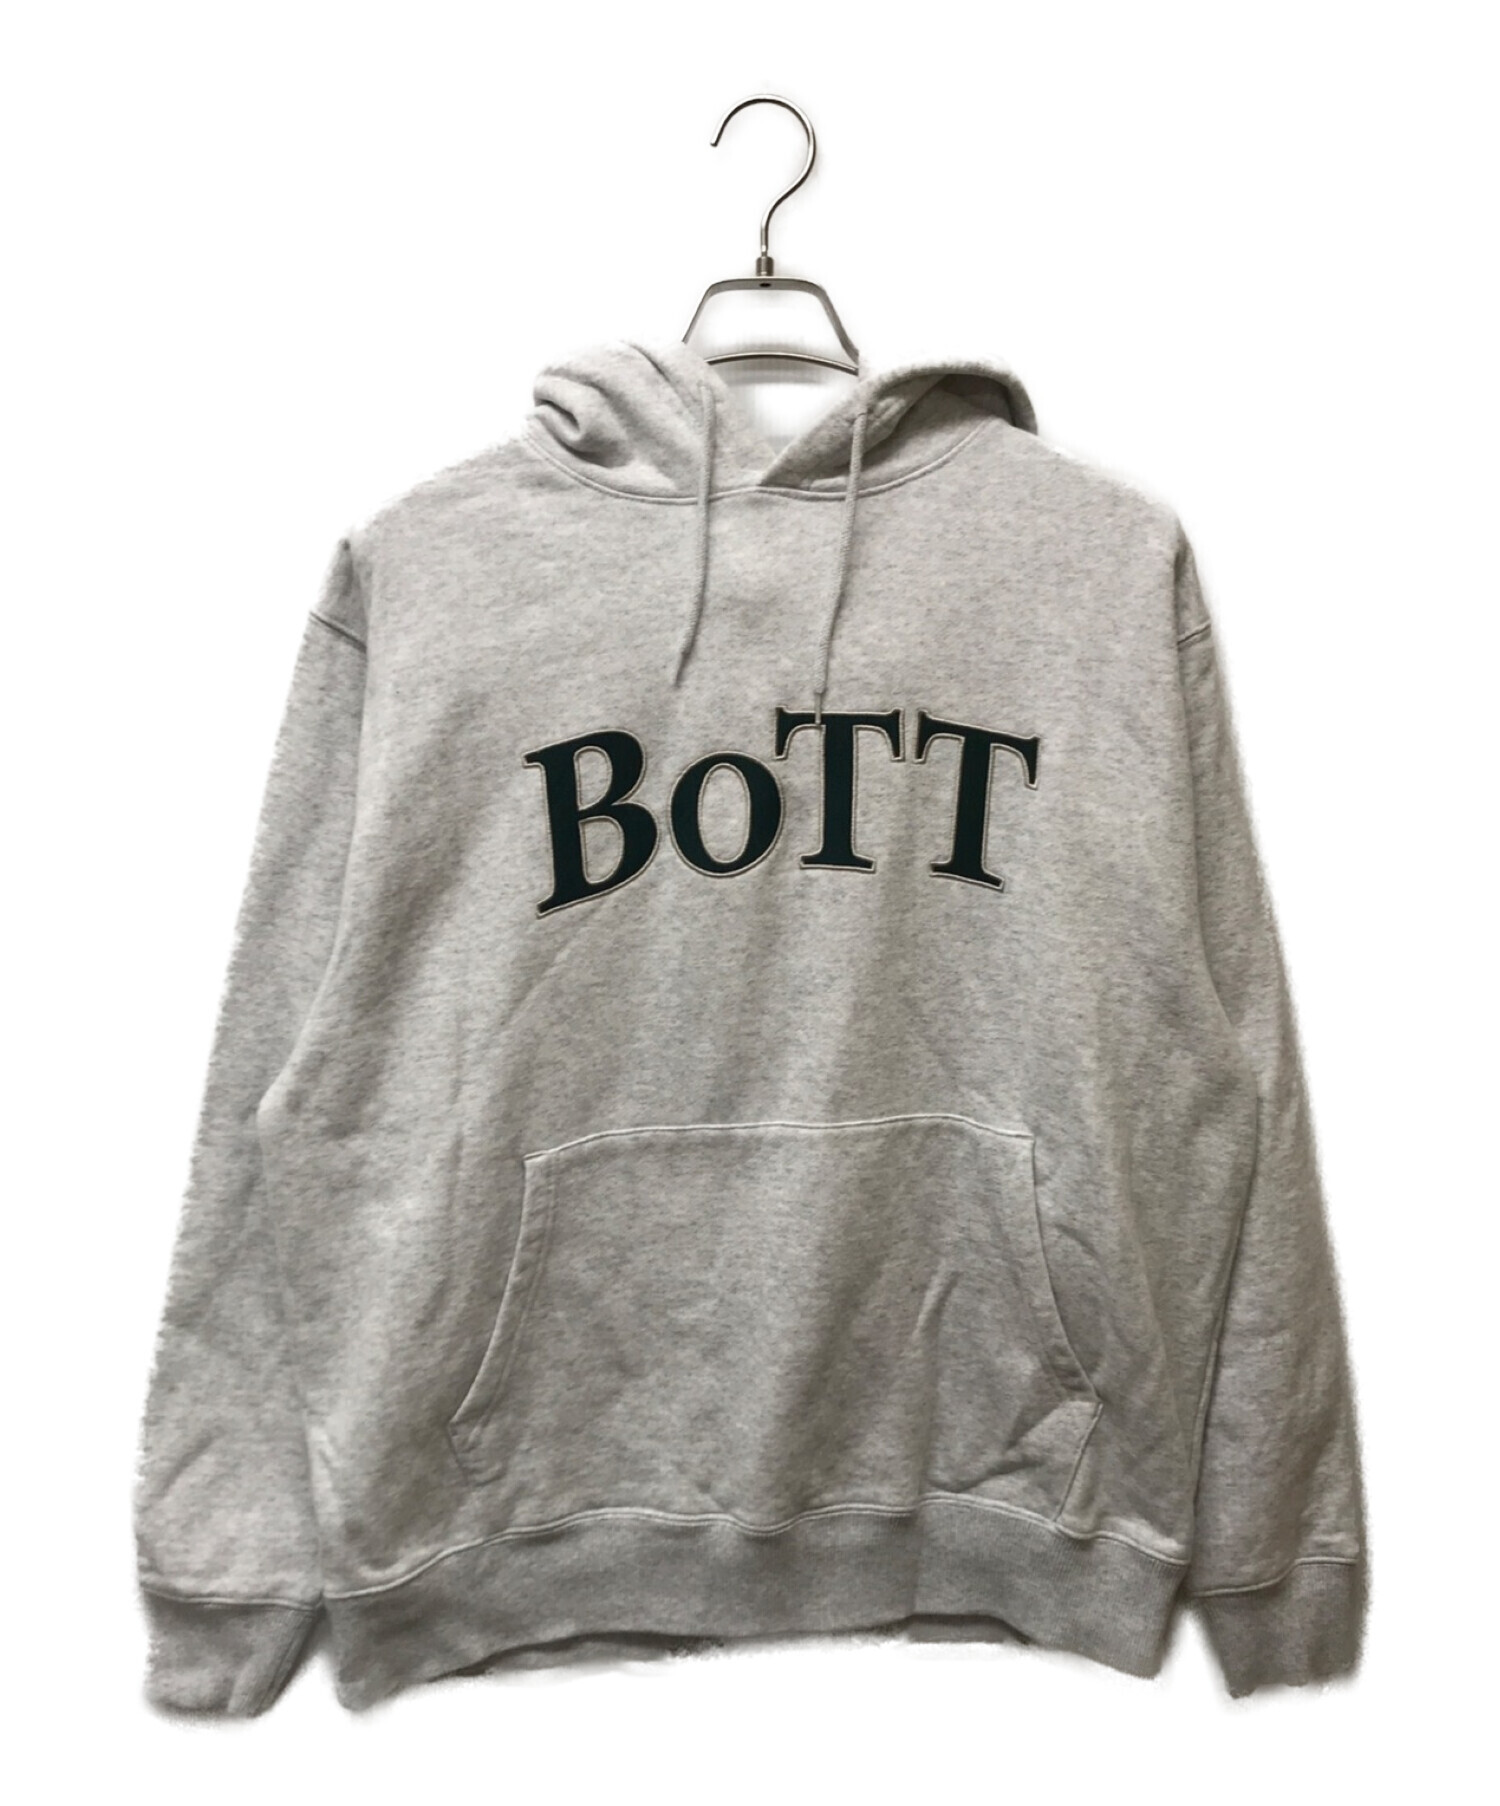 公式サイトにて購入しましたBoTT OG Logo Pullover Hoodie Gray Lサイズ